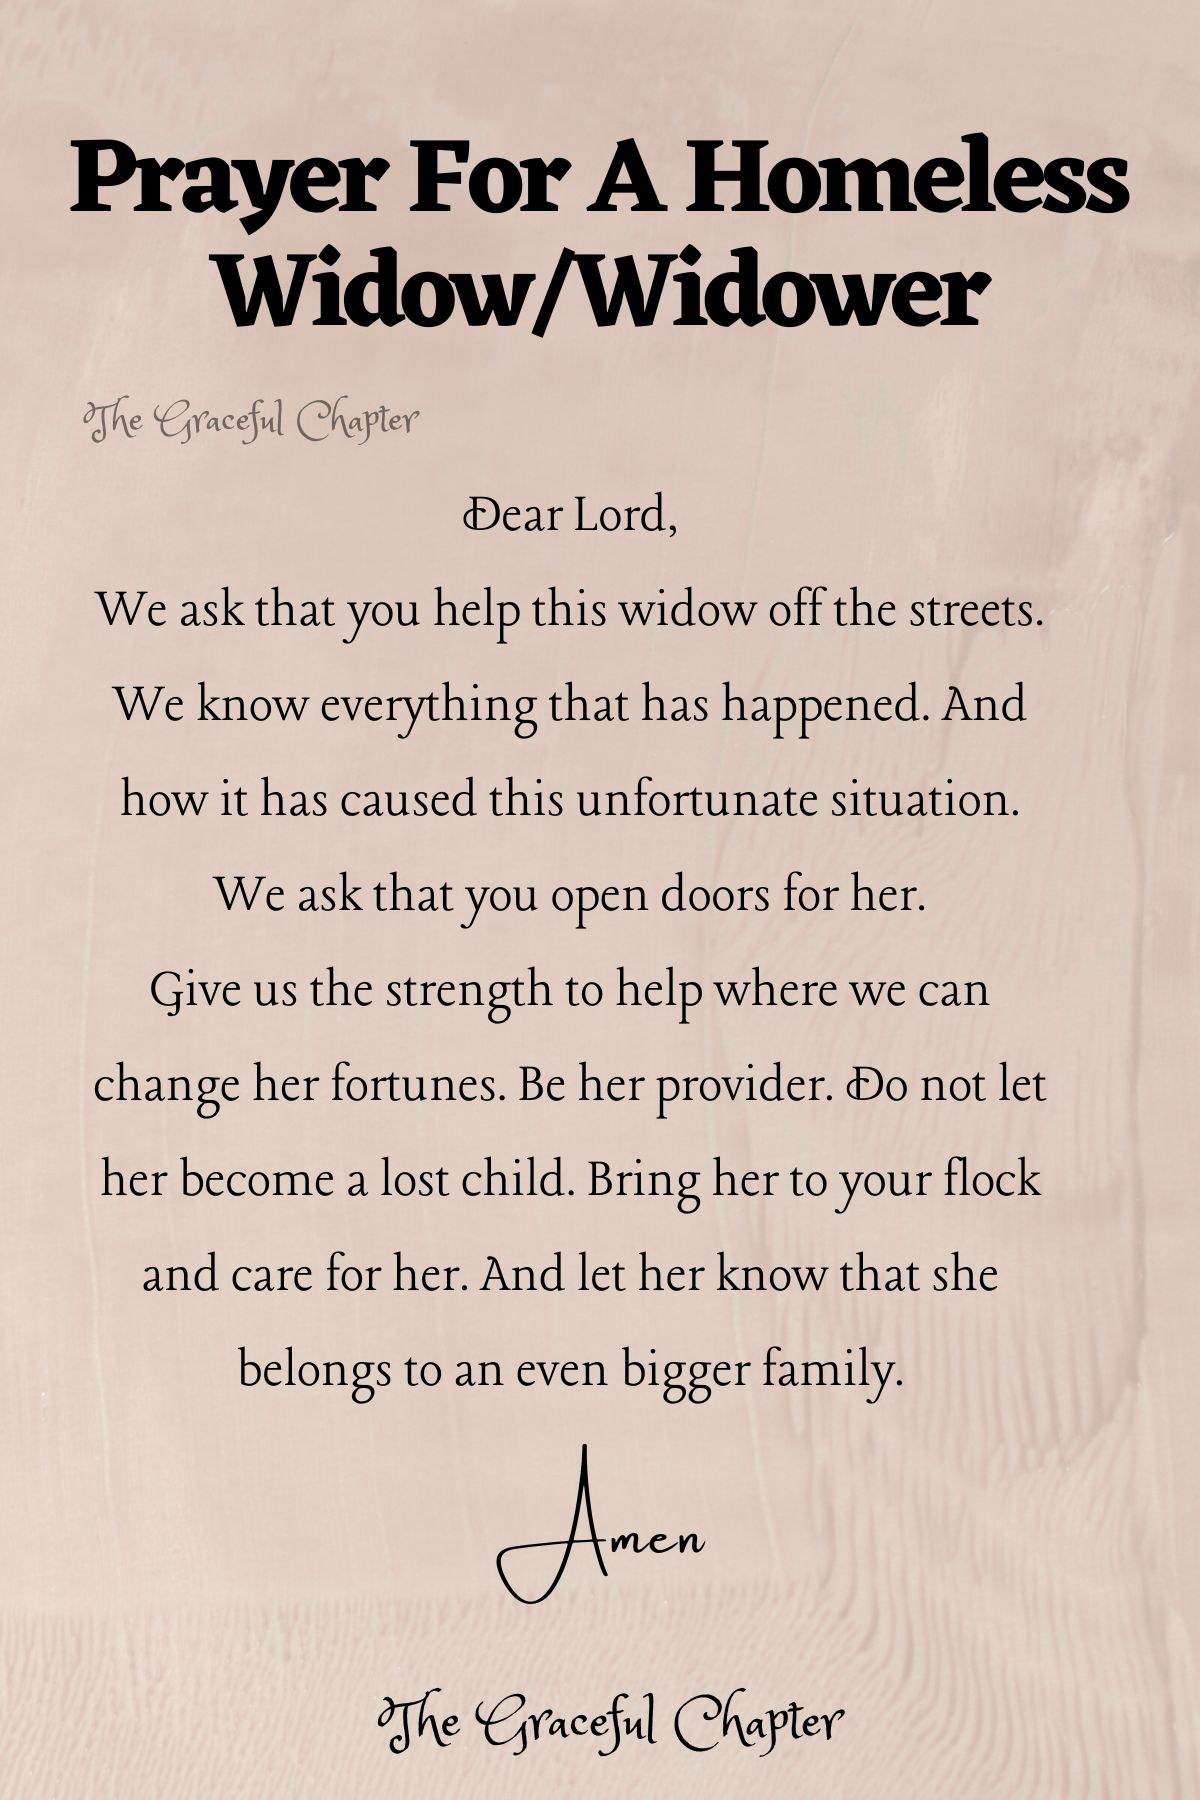 Prayer for a homeless widow/widower